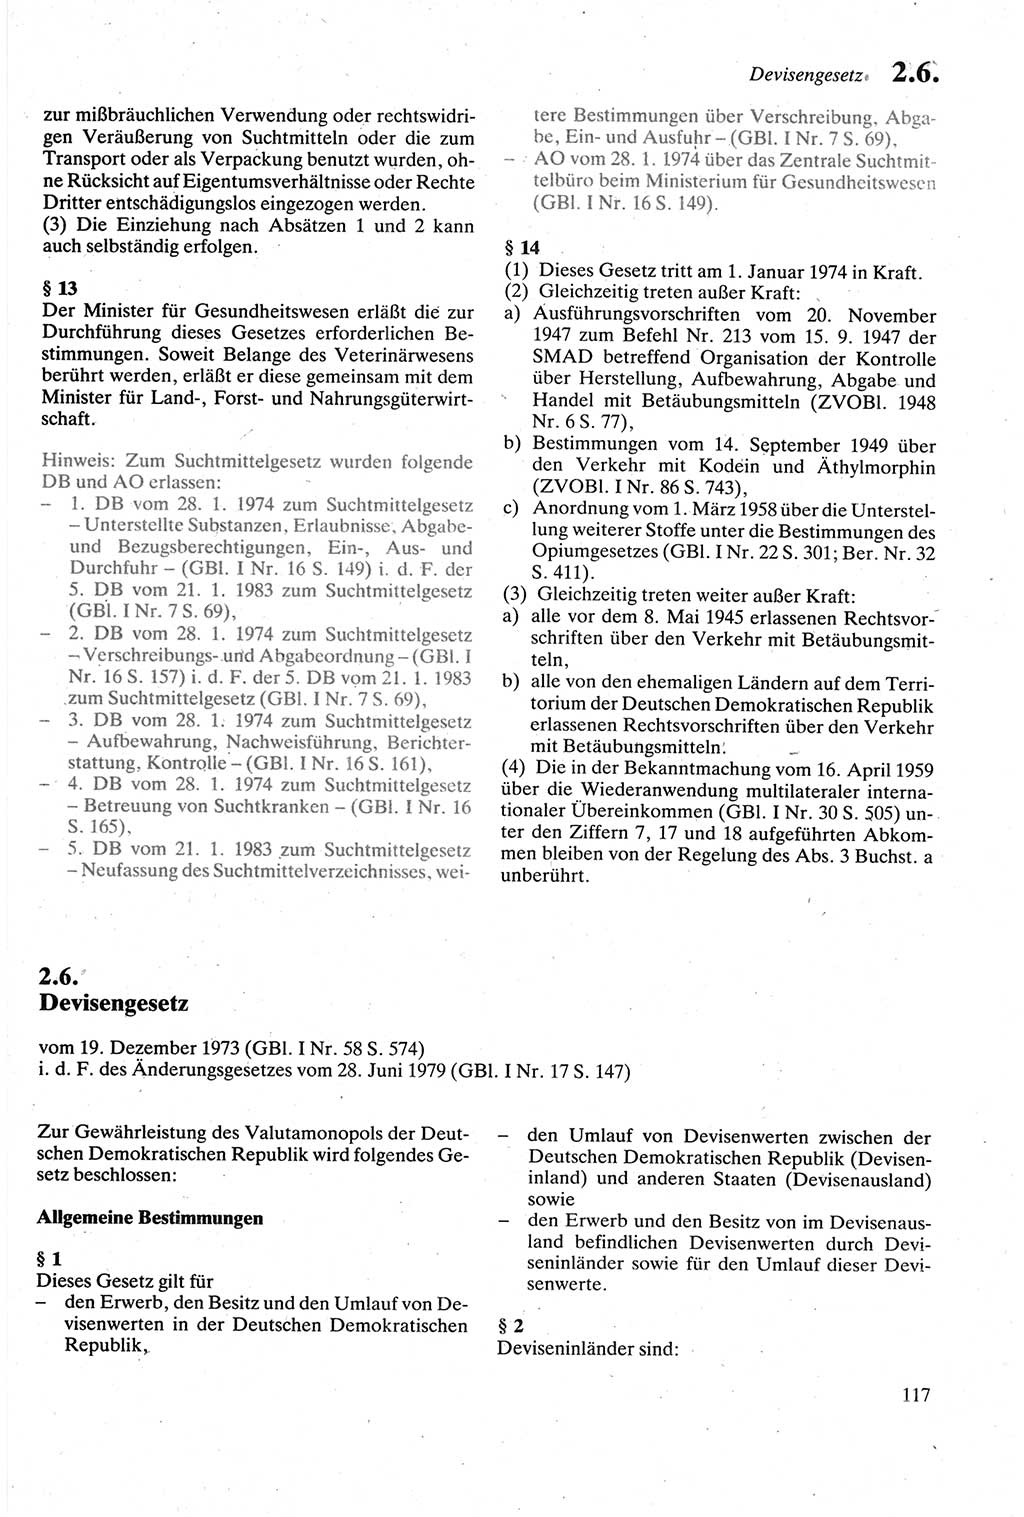 Strafgesetzbuch (StGB) der Deutschen Demokratischen Republik (DDR) sowie angrenzende Gesetze und Bestimmungen 1979, Seite 117 (StGB DDR Ges. Best. 1979, S. 117)